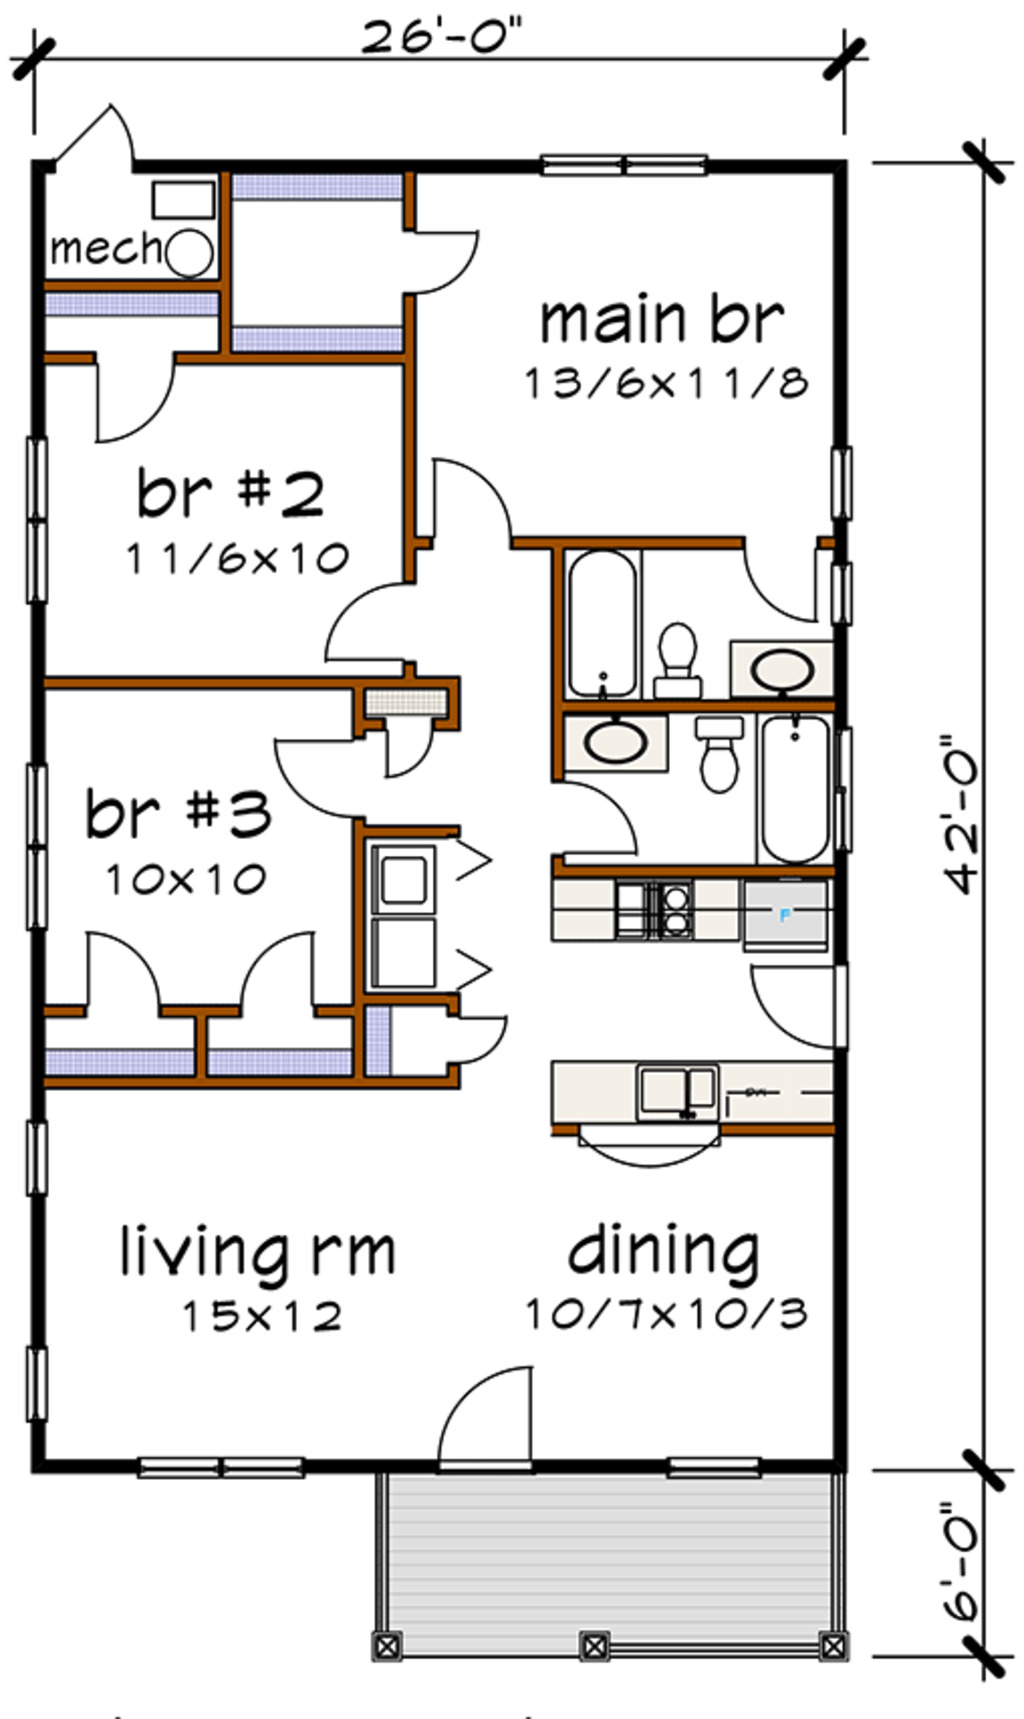 24+ 40X30 Floor Plans 2 Bedroom, Great Inspiration!